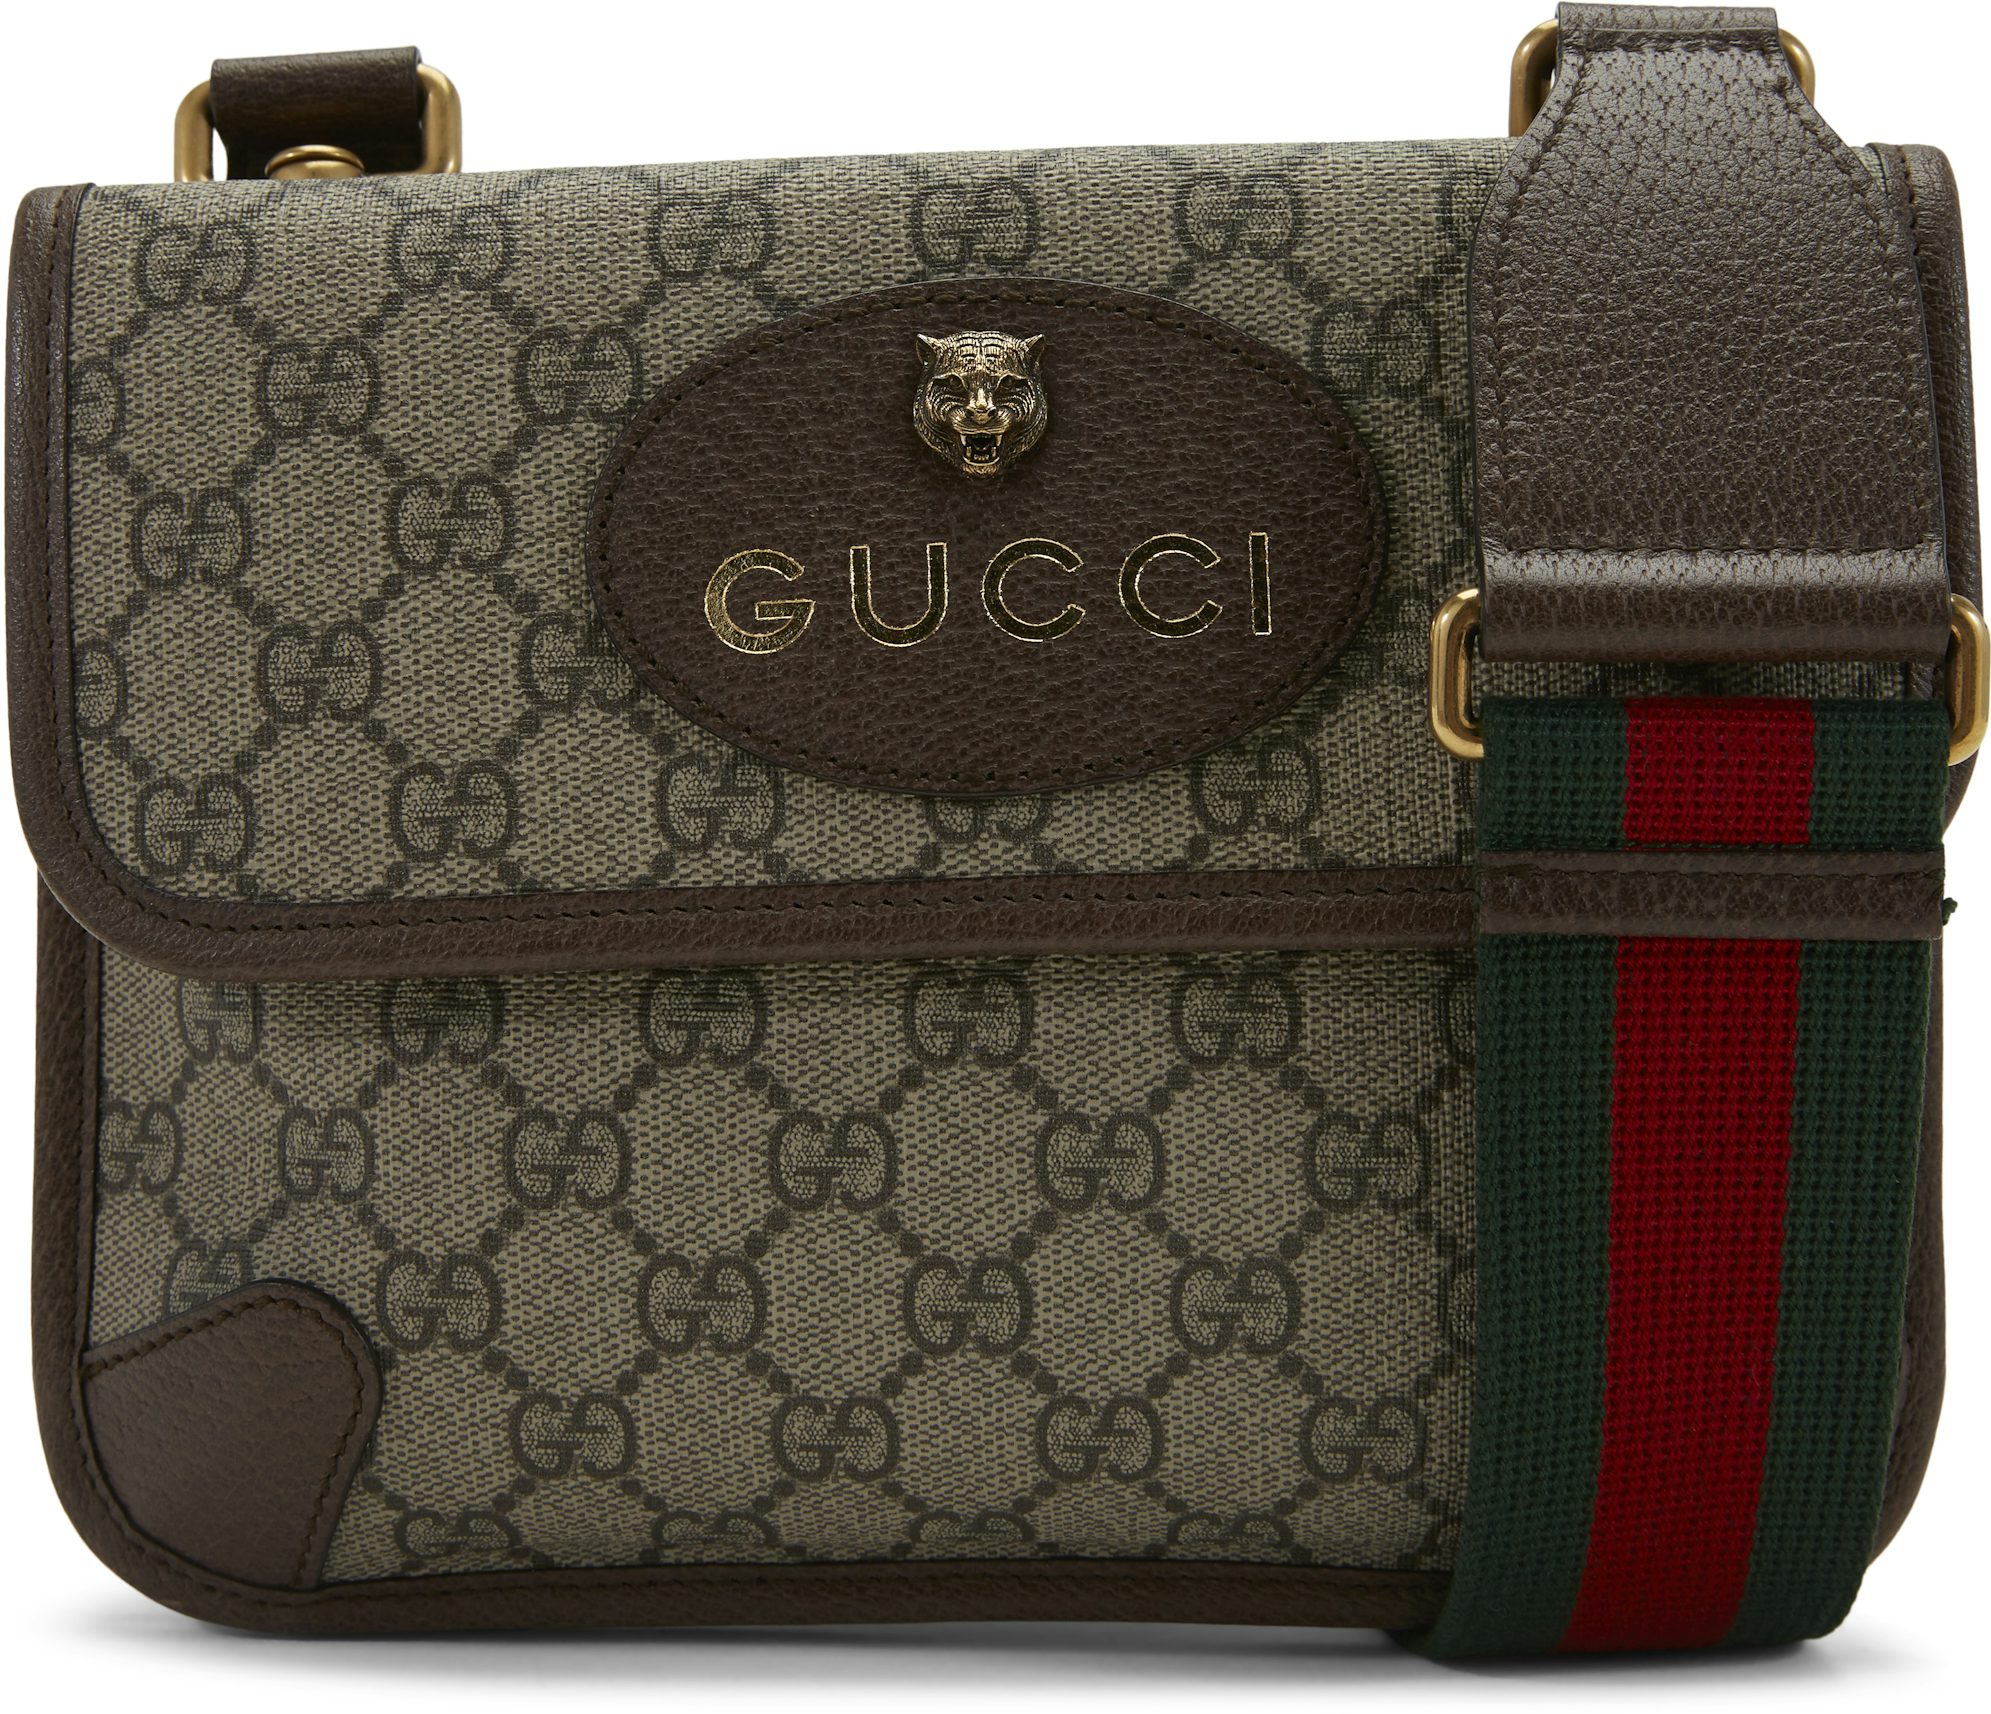 Vintage Gucci GG Supreme Mini Tote Bag